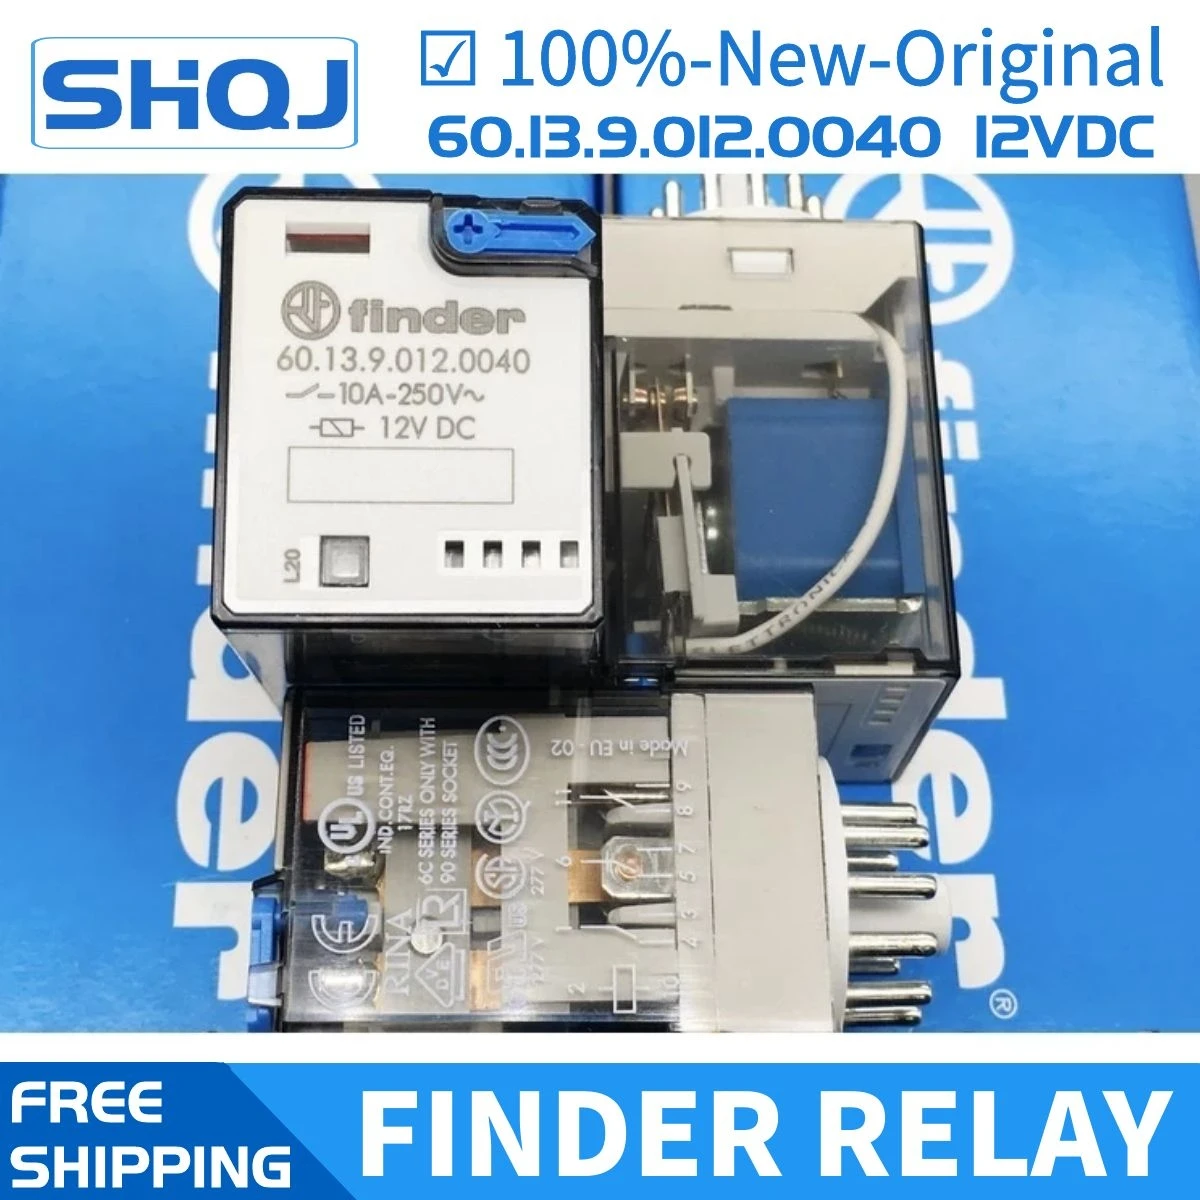 

finder relay 60.13.9.012.0040 60.13 12VDC 10A 3co 100%-new-original